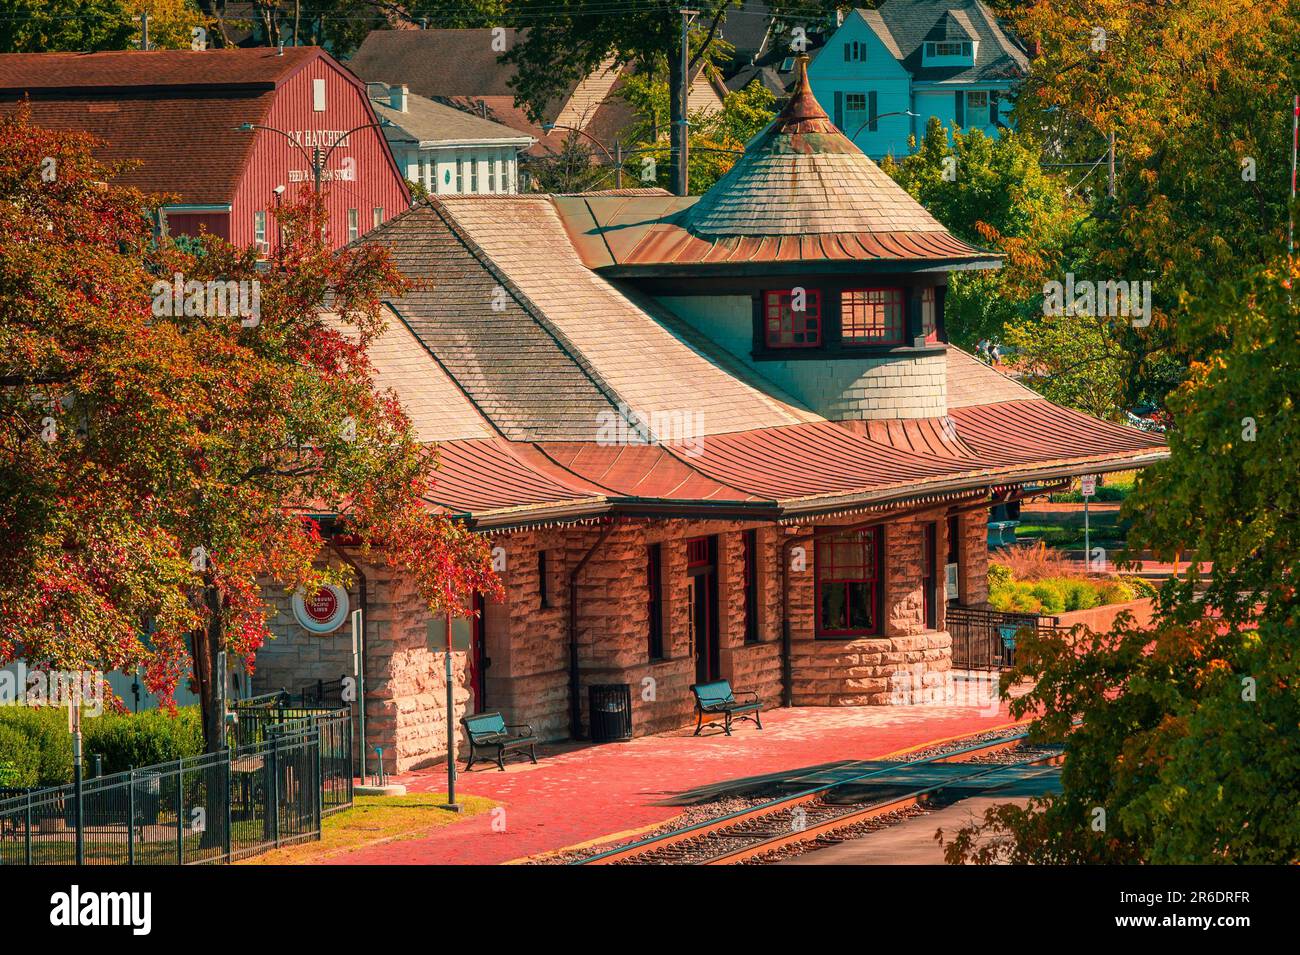 Una vivace stazione ferroviaria con uno schema colore distinto che presenta sfumature di rosso e verde Foto Stock